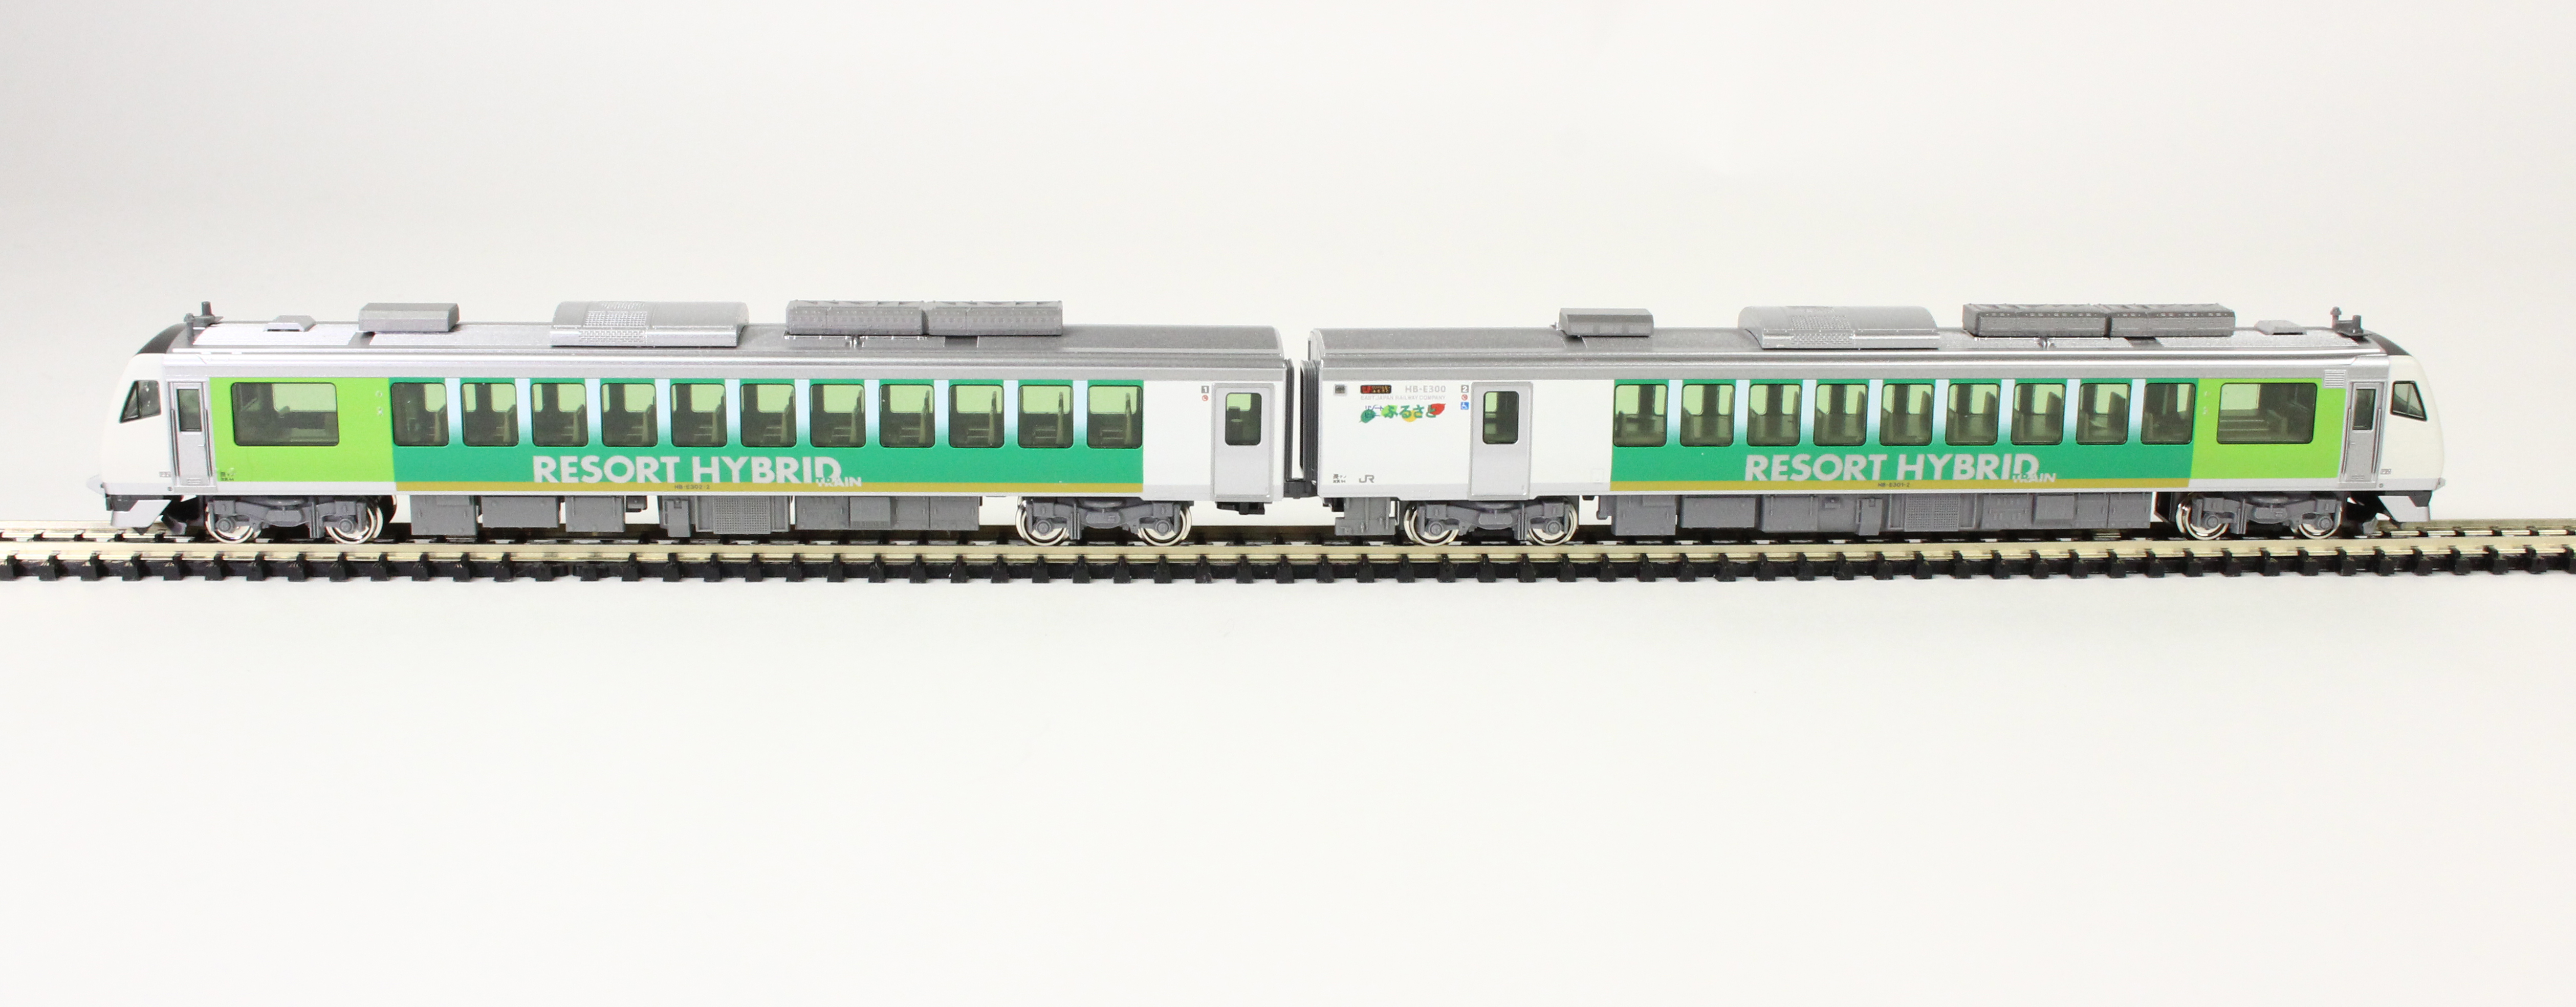 KATO 10-1368 HB-E300系 「リゾートビューふるさと」 2両セット 鉄道模型 Nゲージ | 鉄道模型 通販 ホビーショップタムタム